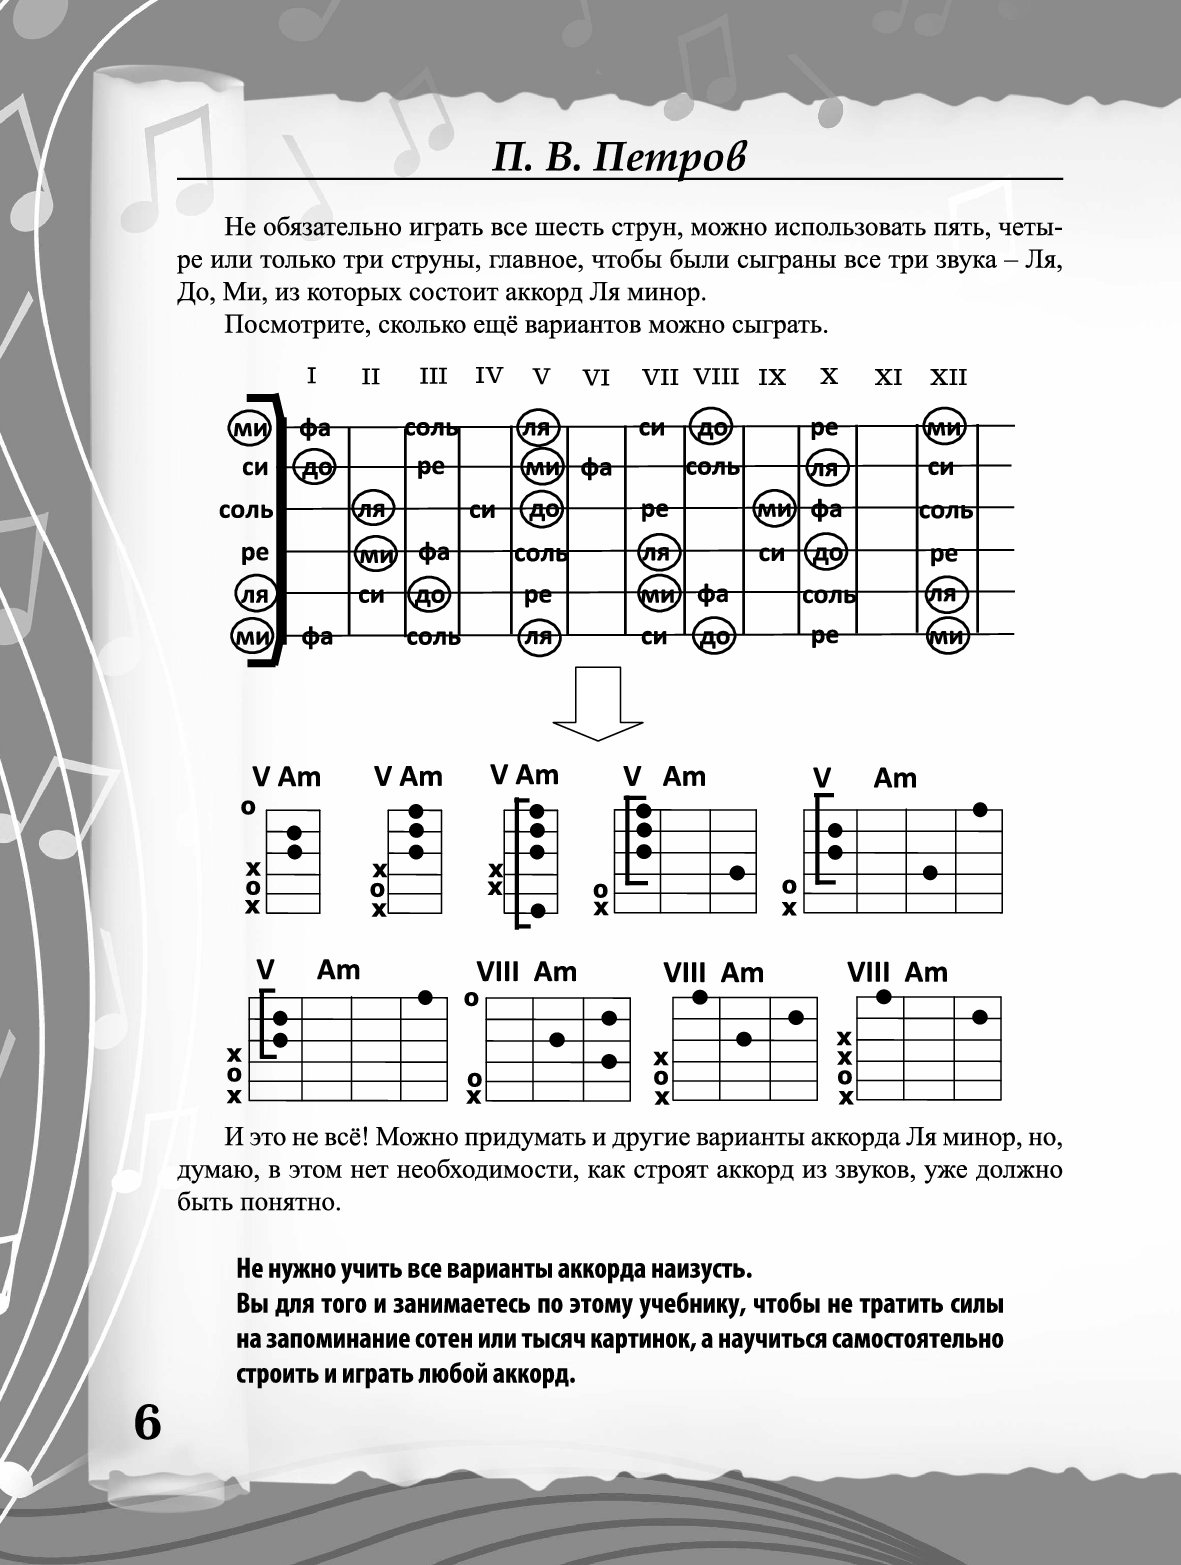 Аккорды для гитары таблица для начинающих. Аккорды на гитаре на 6 струнной гитаре. Аккорды для гитары для начинающих 6 струн. Простые аккорды на гитаре для начинающих 6 струн. Таблица аккордов для гитары 6 струн для начинающих.